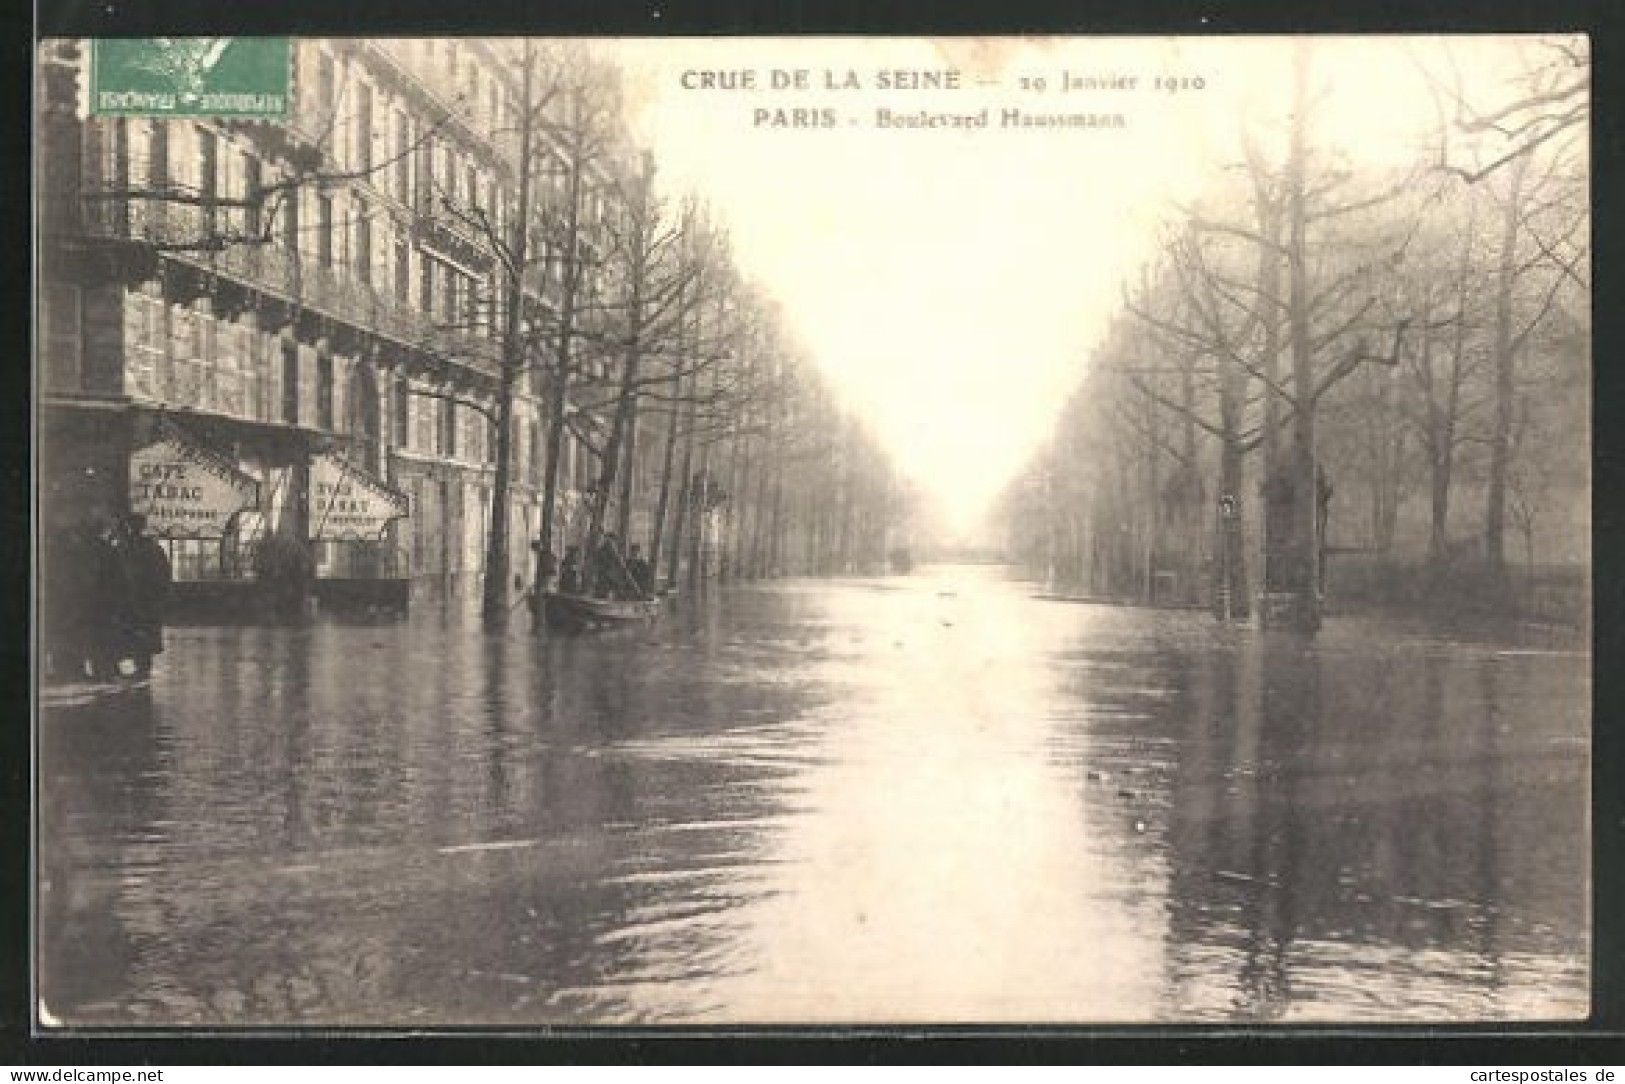 AK Crue De La Seine (29 Janvier 1910) - Paris -Boulevard Haussmann, Hochwasser  - Inondations